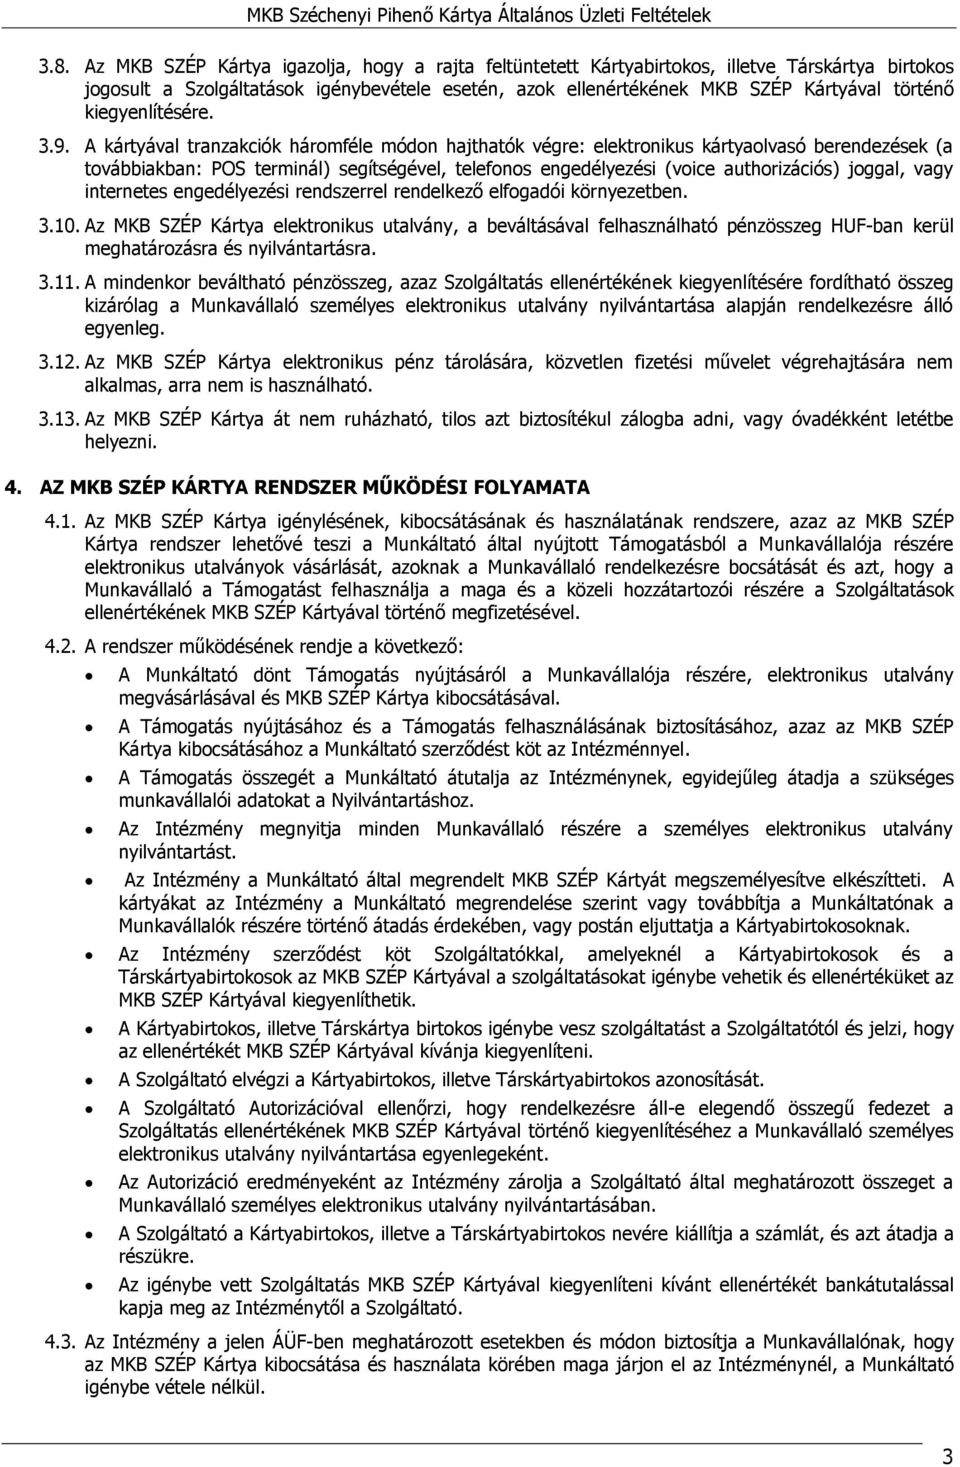 Az MKB Széchenyi Pihenő Kártya igénylésének, kibocsátásának és  használatának általános üzleti feltételei - PDF Ingyenes letöltés